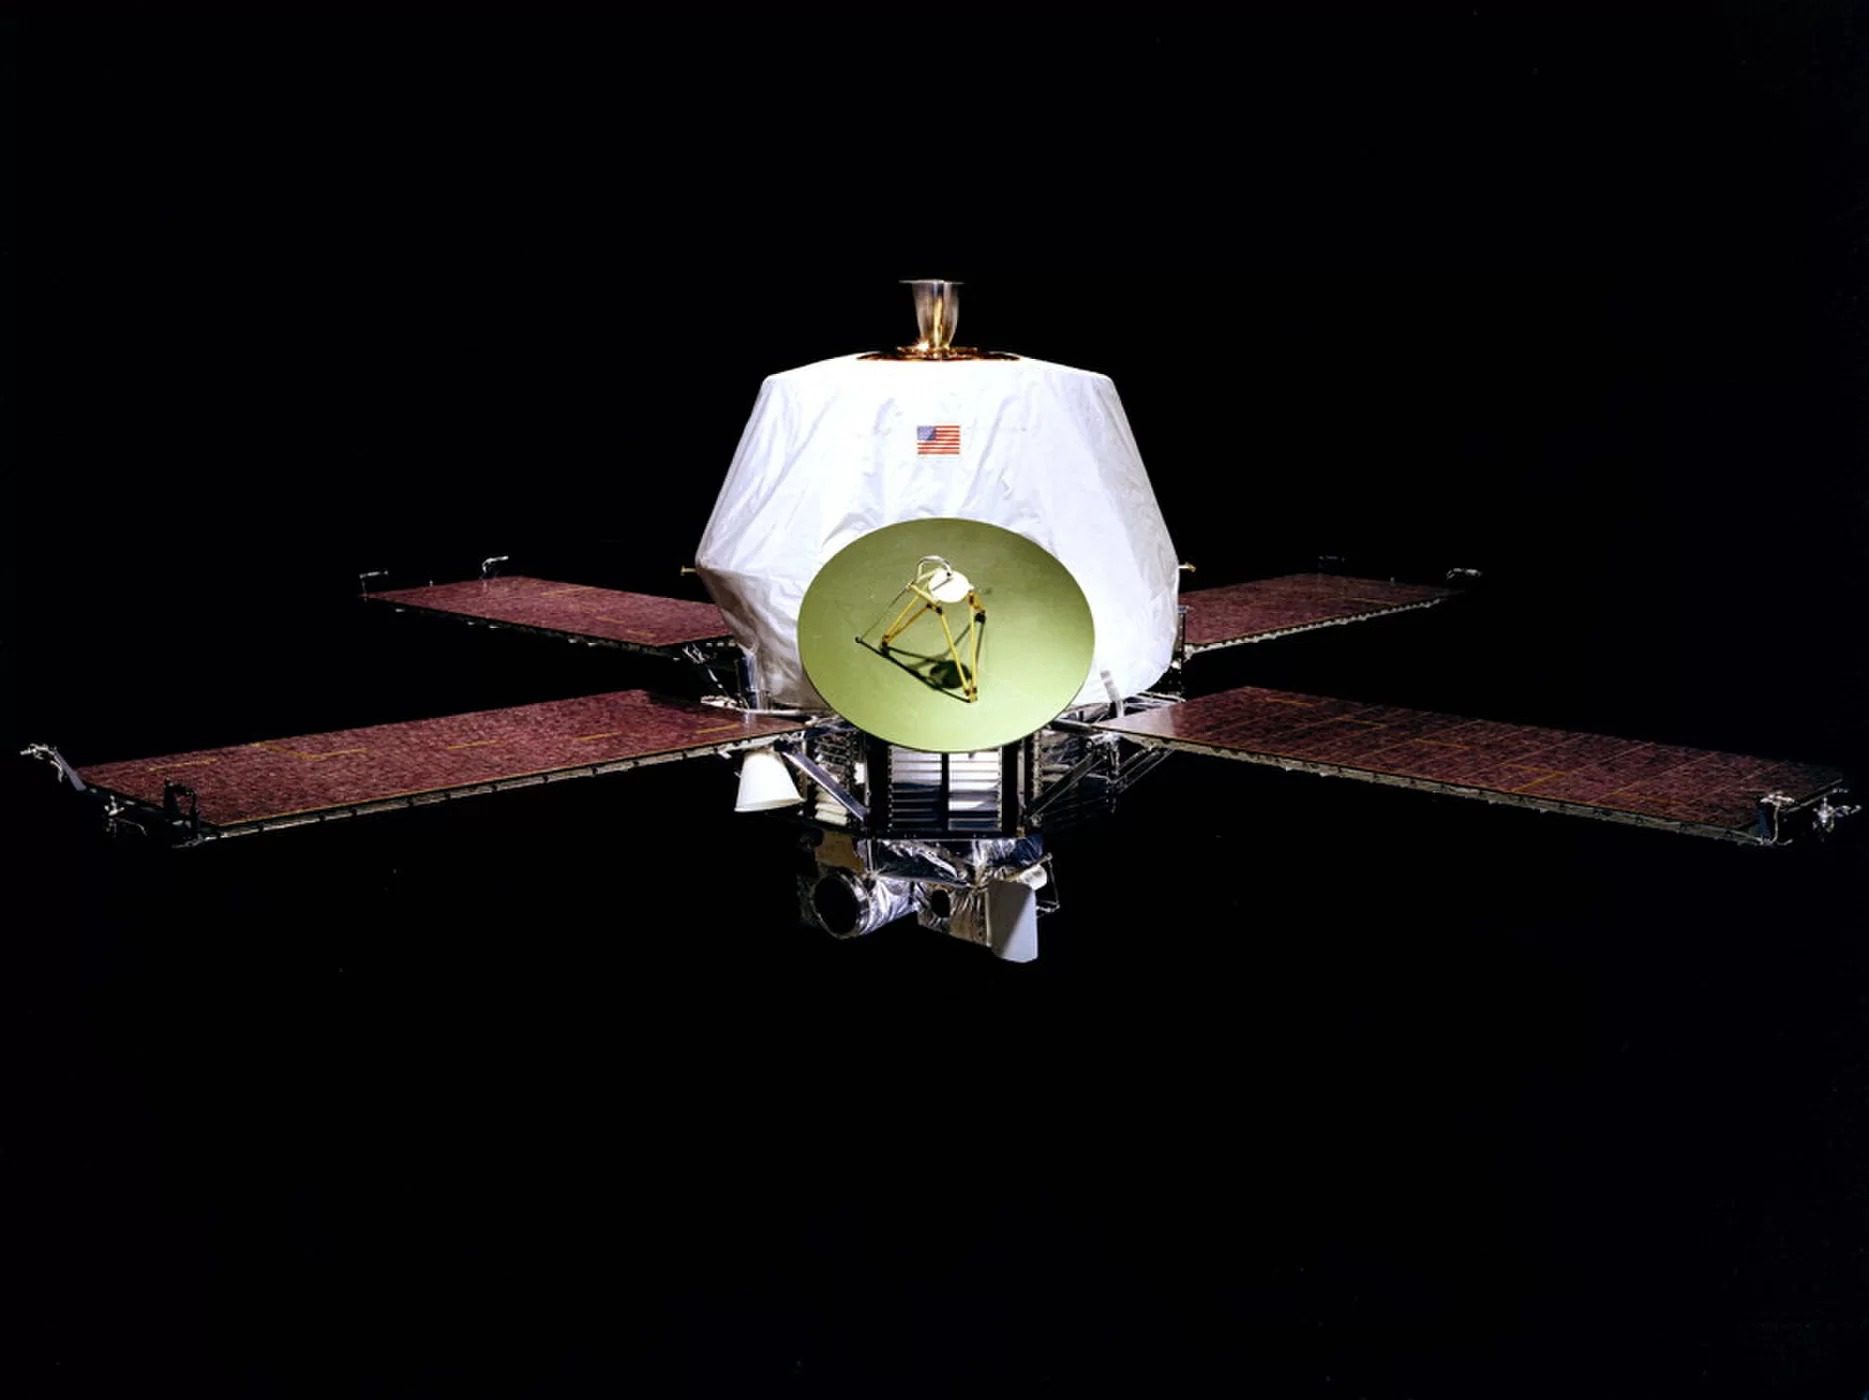 مارينر 9: أول مسبار يدور حول المريخ|. تُظهر هذه الصورة الخاصة بأوكشيا بالوس كوادراغل، التي التقطها مارينر 9، مساحة كبيرة من سطح مار.|في صورة التقطت باكرًا في بعثة مارينر 9، يقف أوليمبوس مونس فوق العاصفة الترابية المريخية.